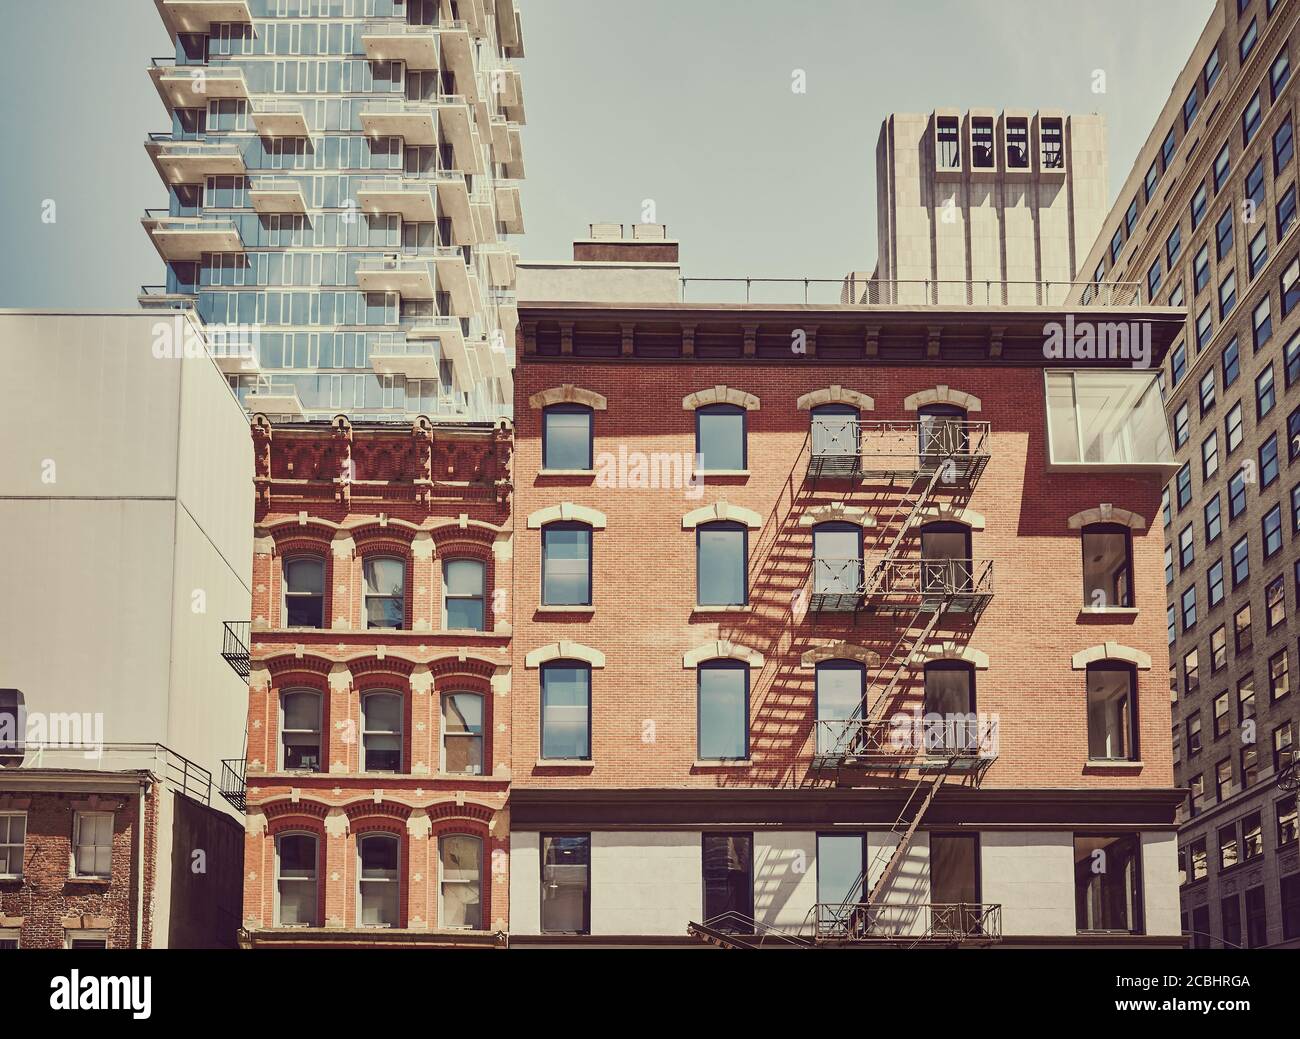 Image colorée de l'architecture diversifiée de New York, États-Unis. Banque D'Images